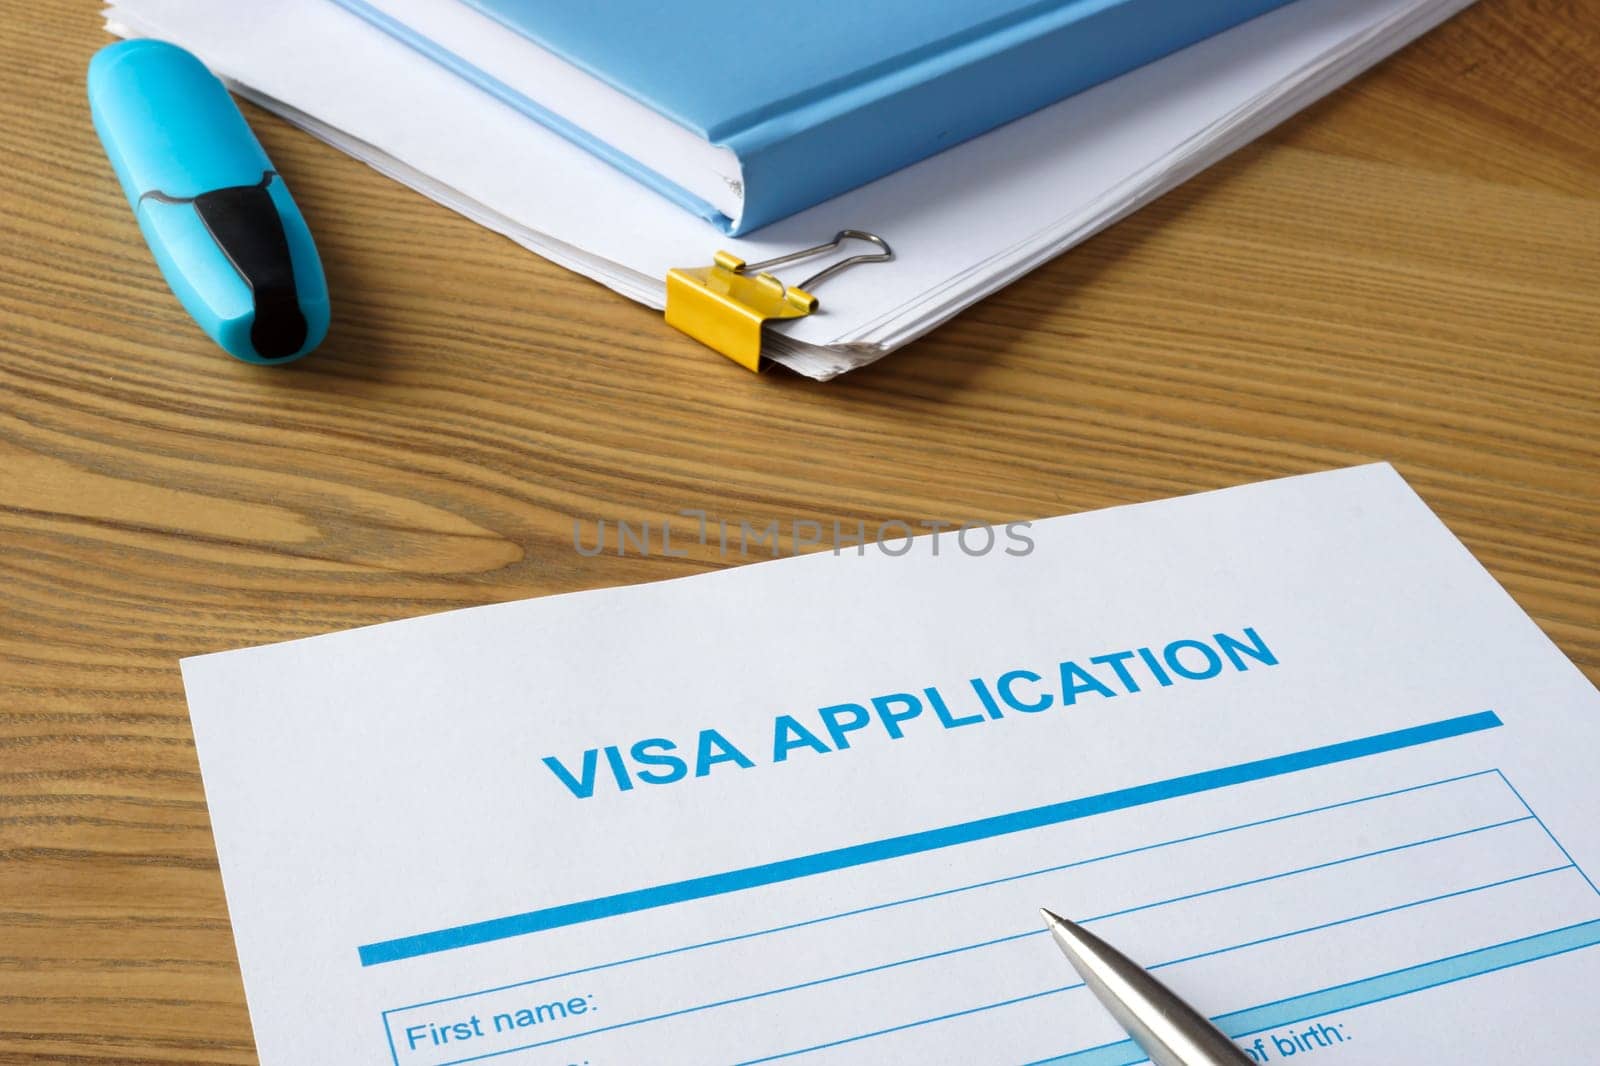 Empty visa application form and a pen.